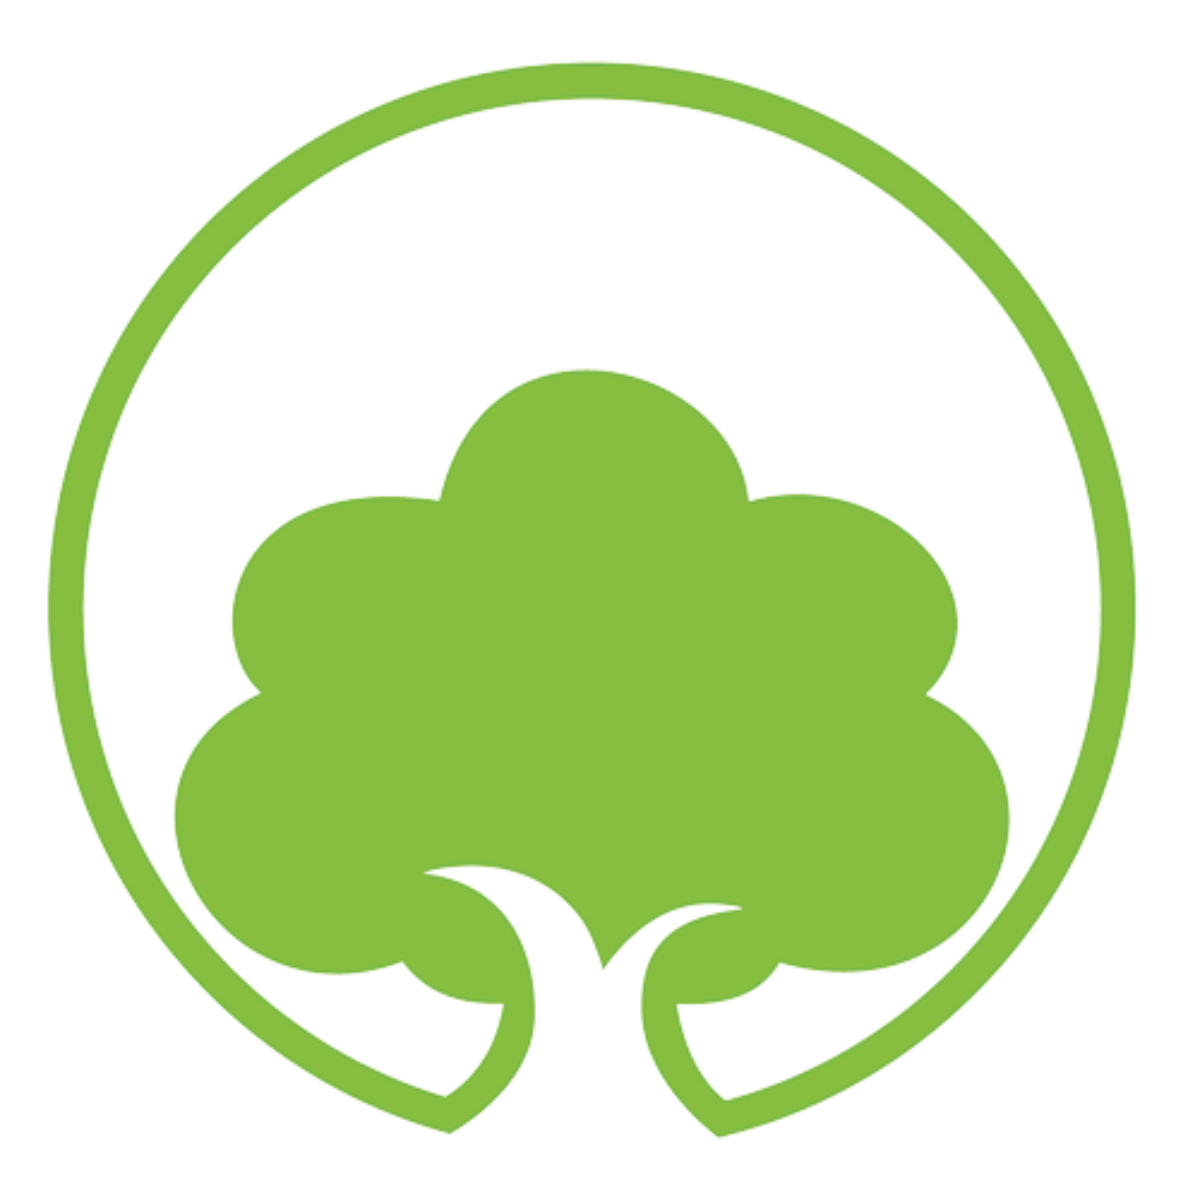 arctree logo transparent